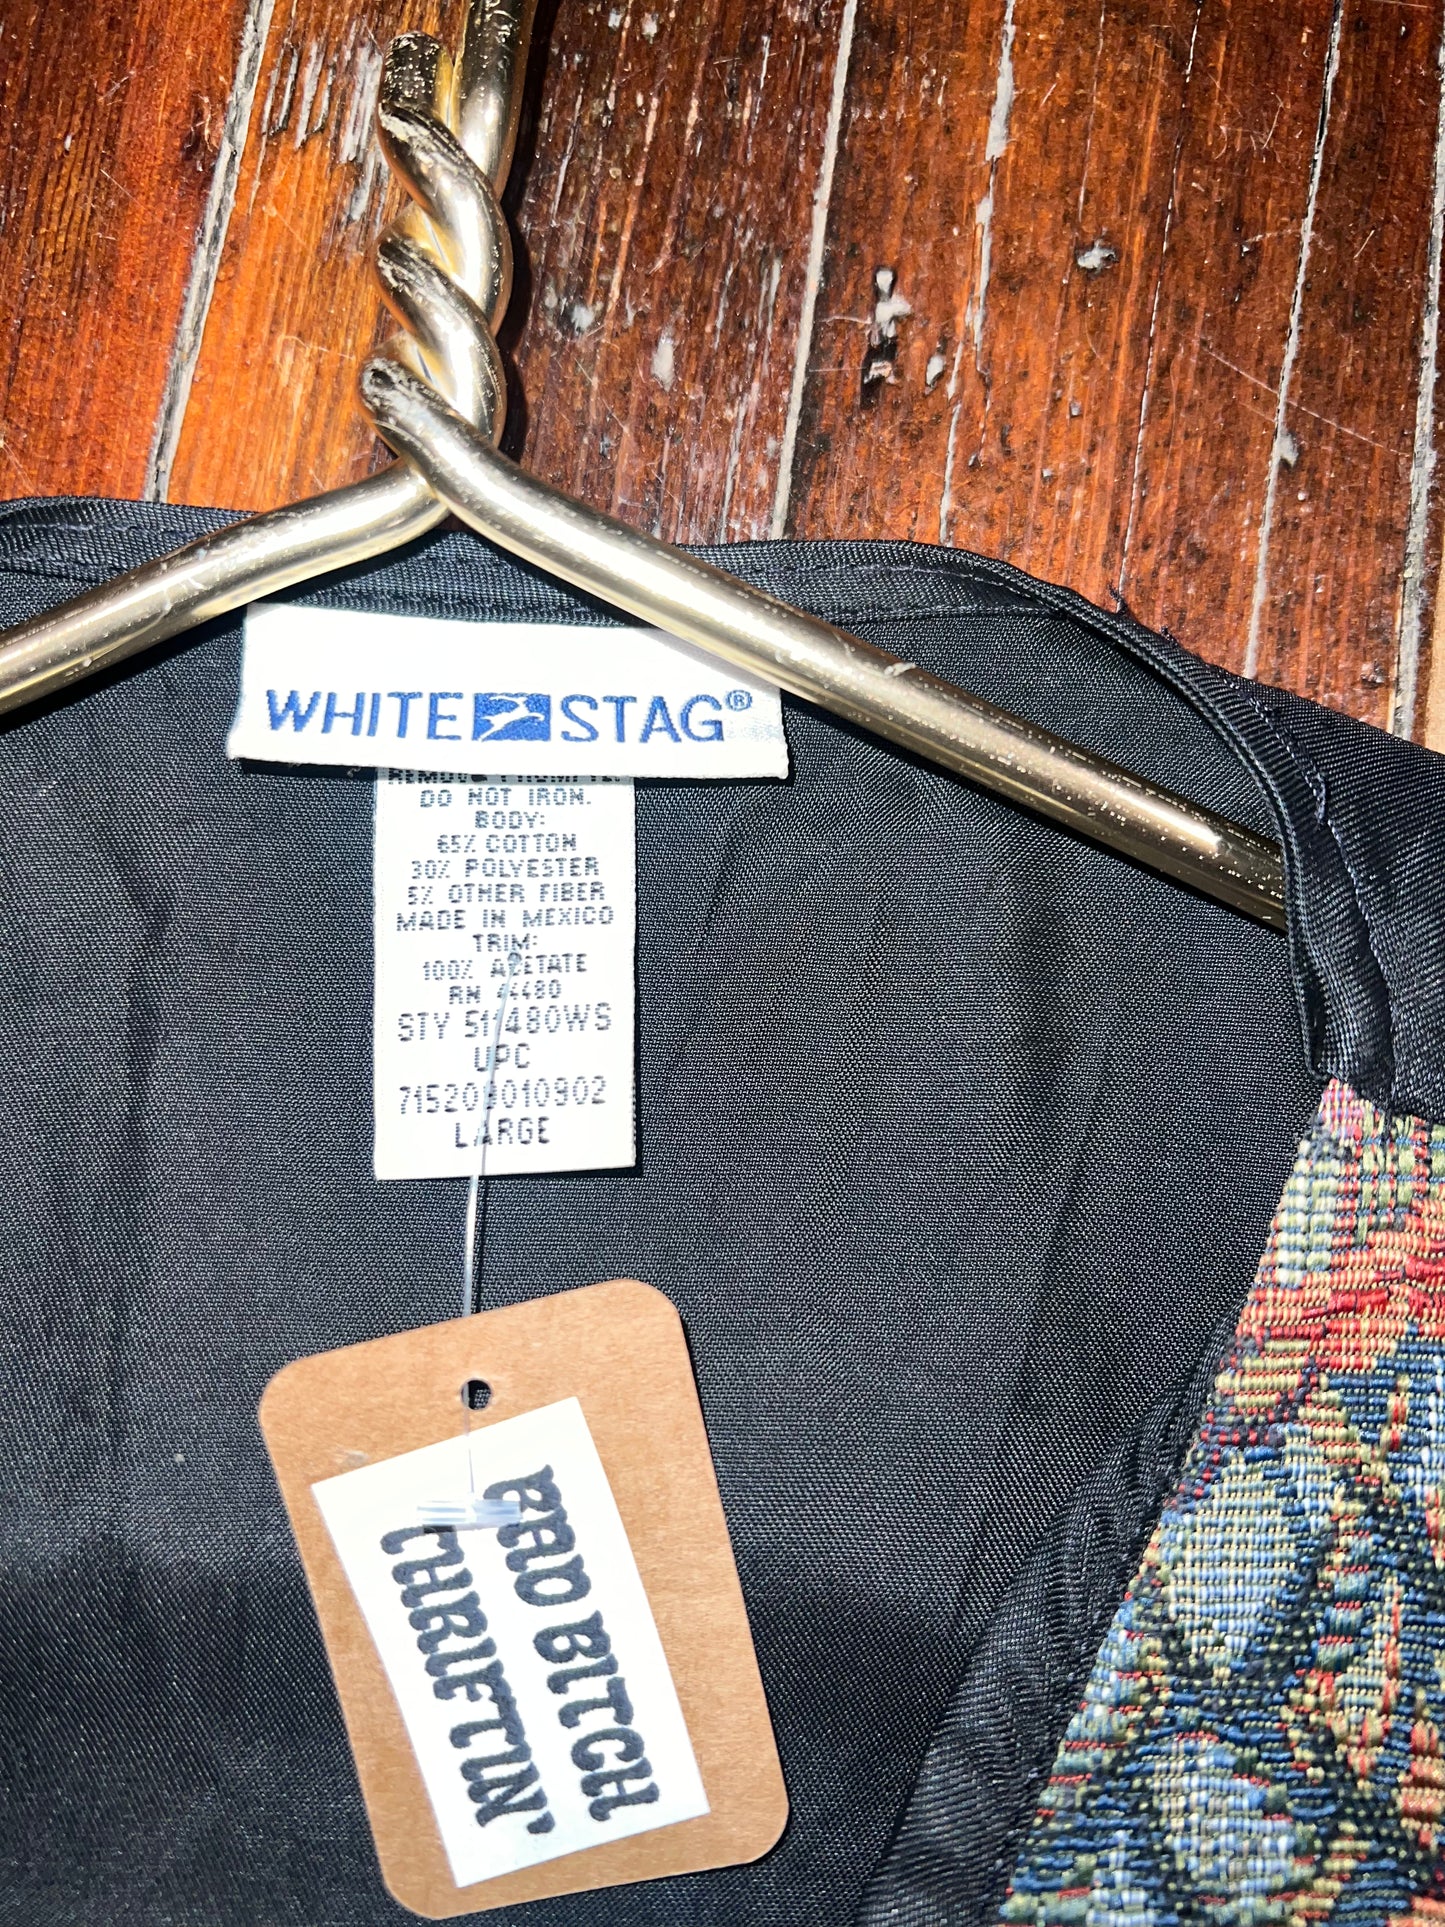 Jacquard Vintage Vest (L)